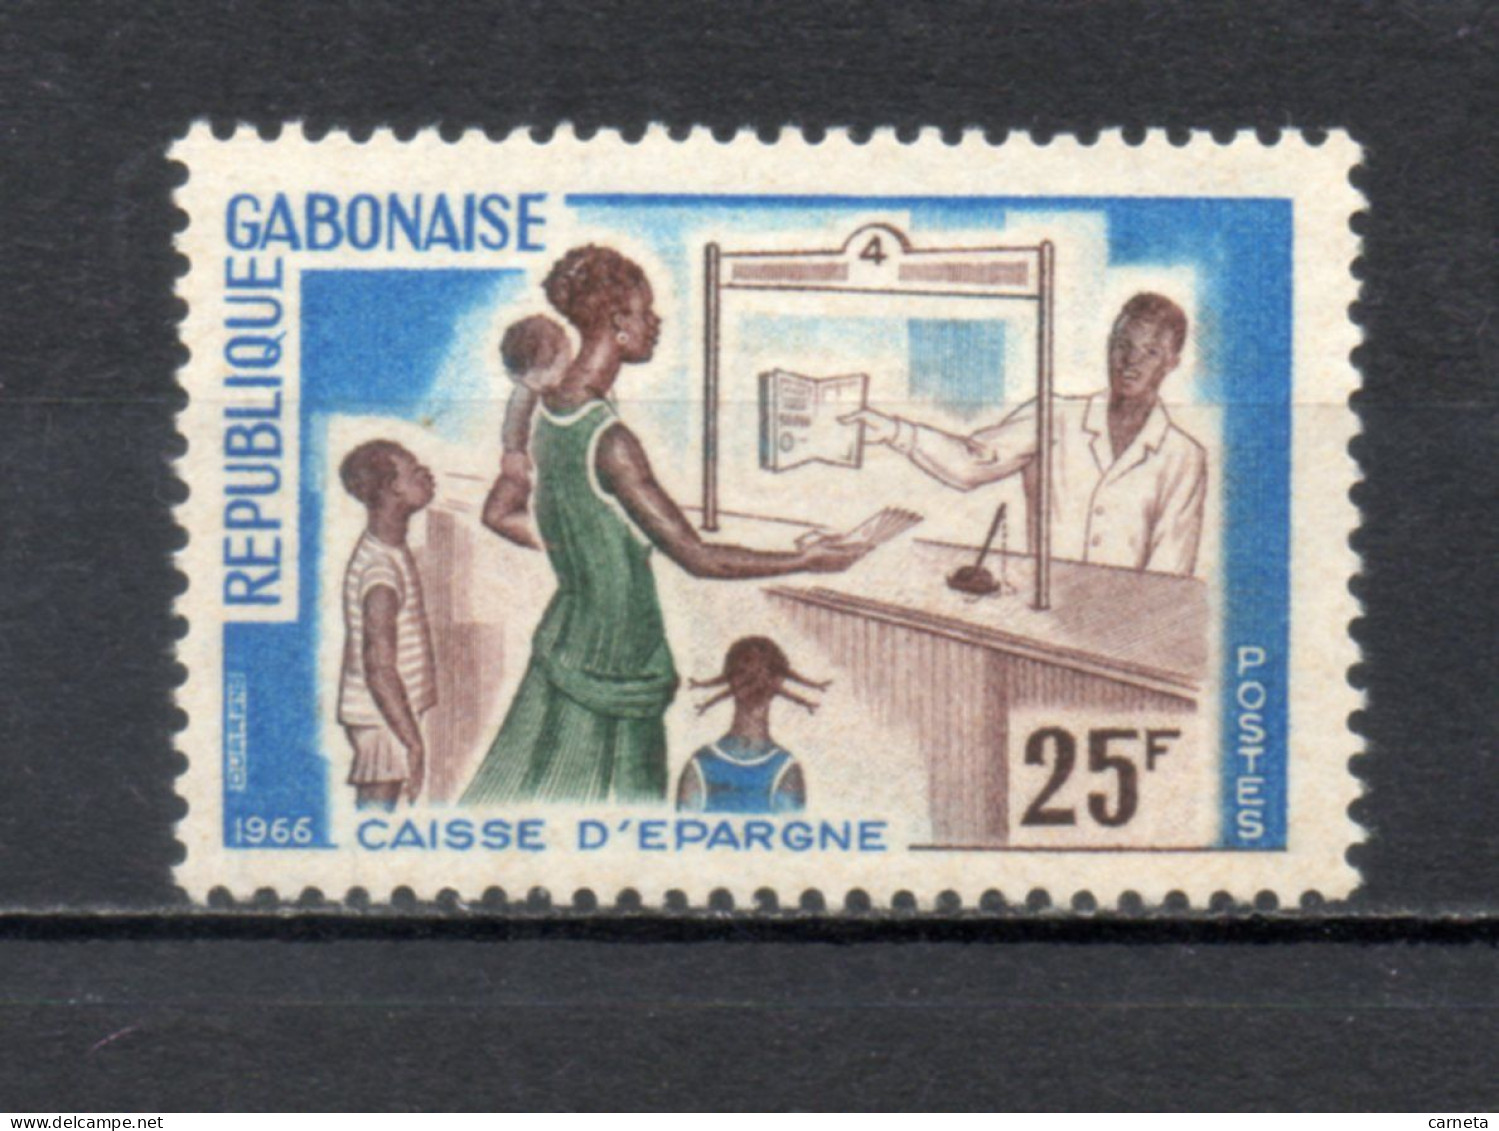 GABON  N° 198   NEUF SANS CHARNIERE COTE  1.00€    CAISSE D'EPARNE - Gabon (1960-...)